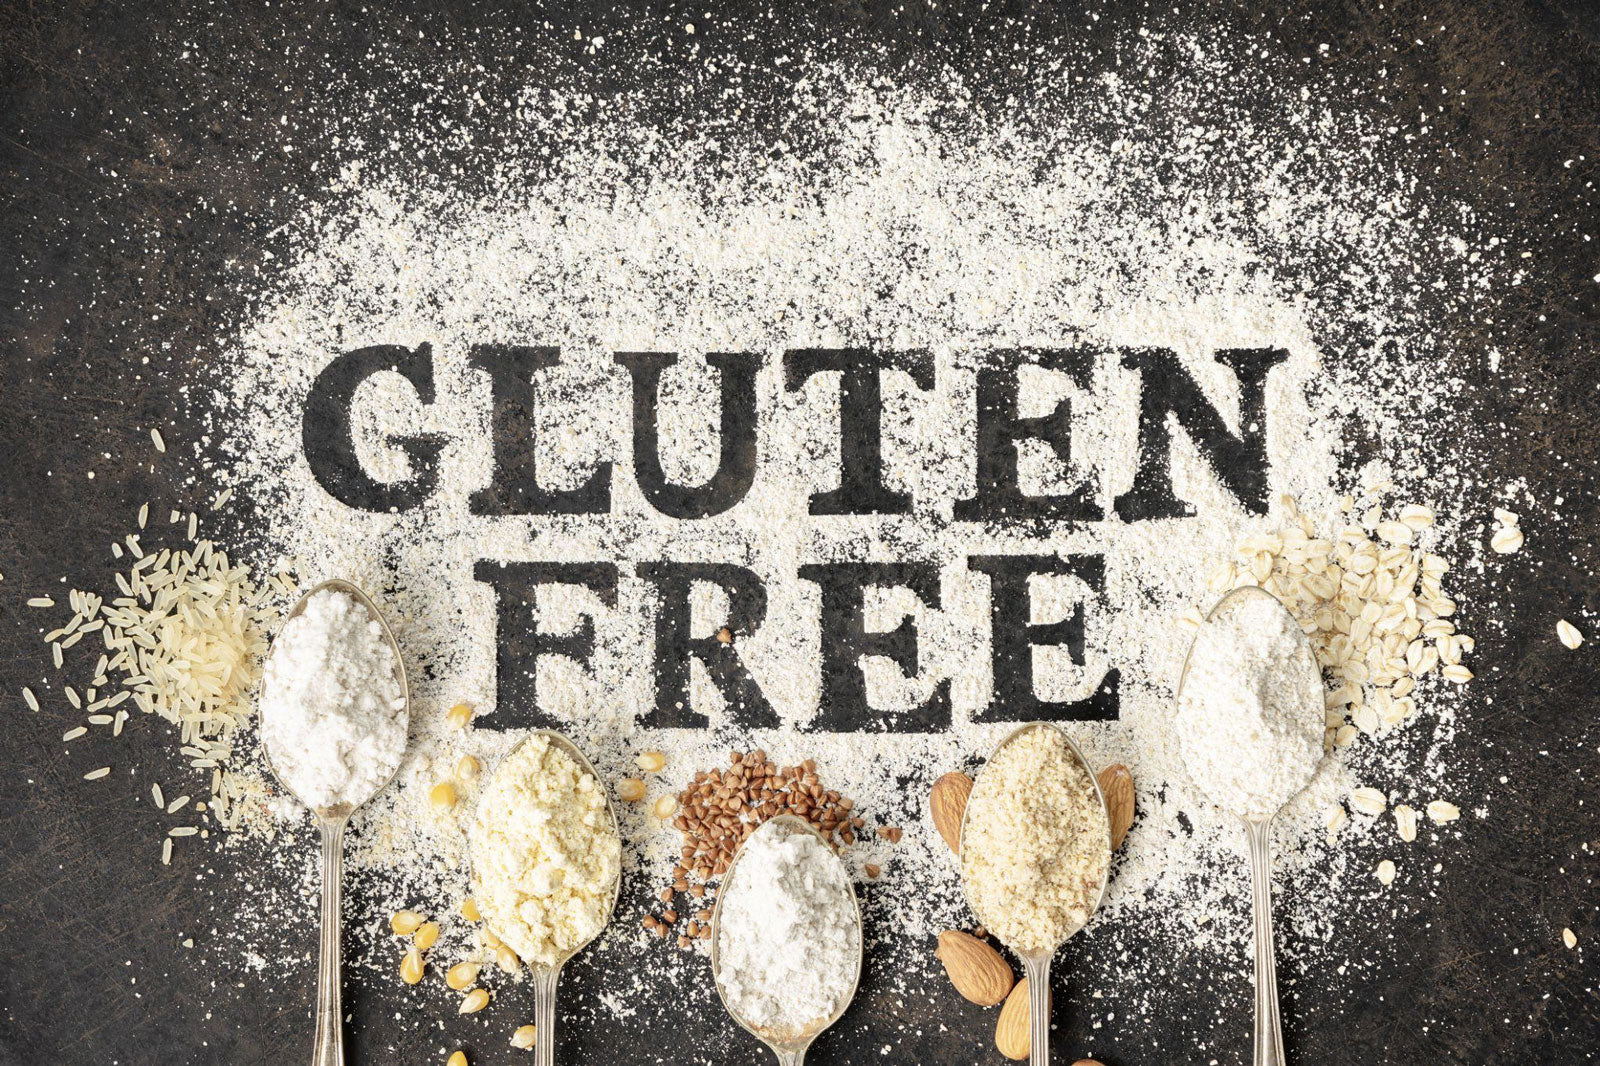 How to Find Gluten-Free Protein Bars | Gluten-Free Protein Bar Brands